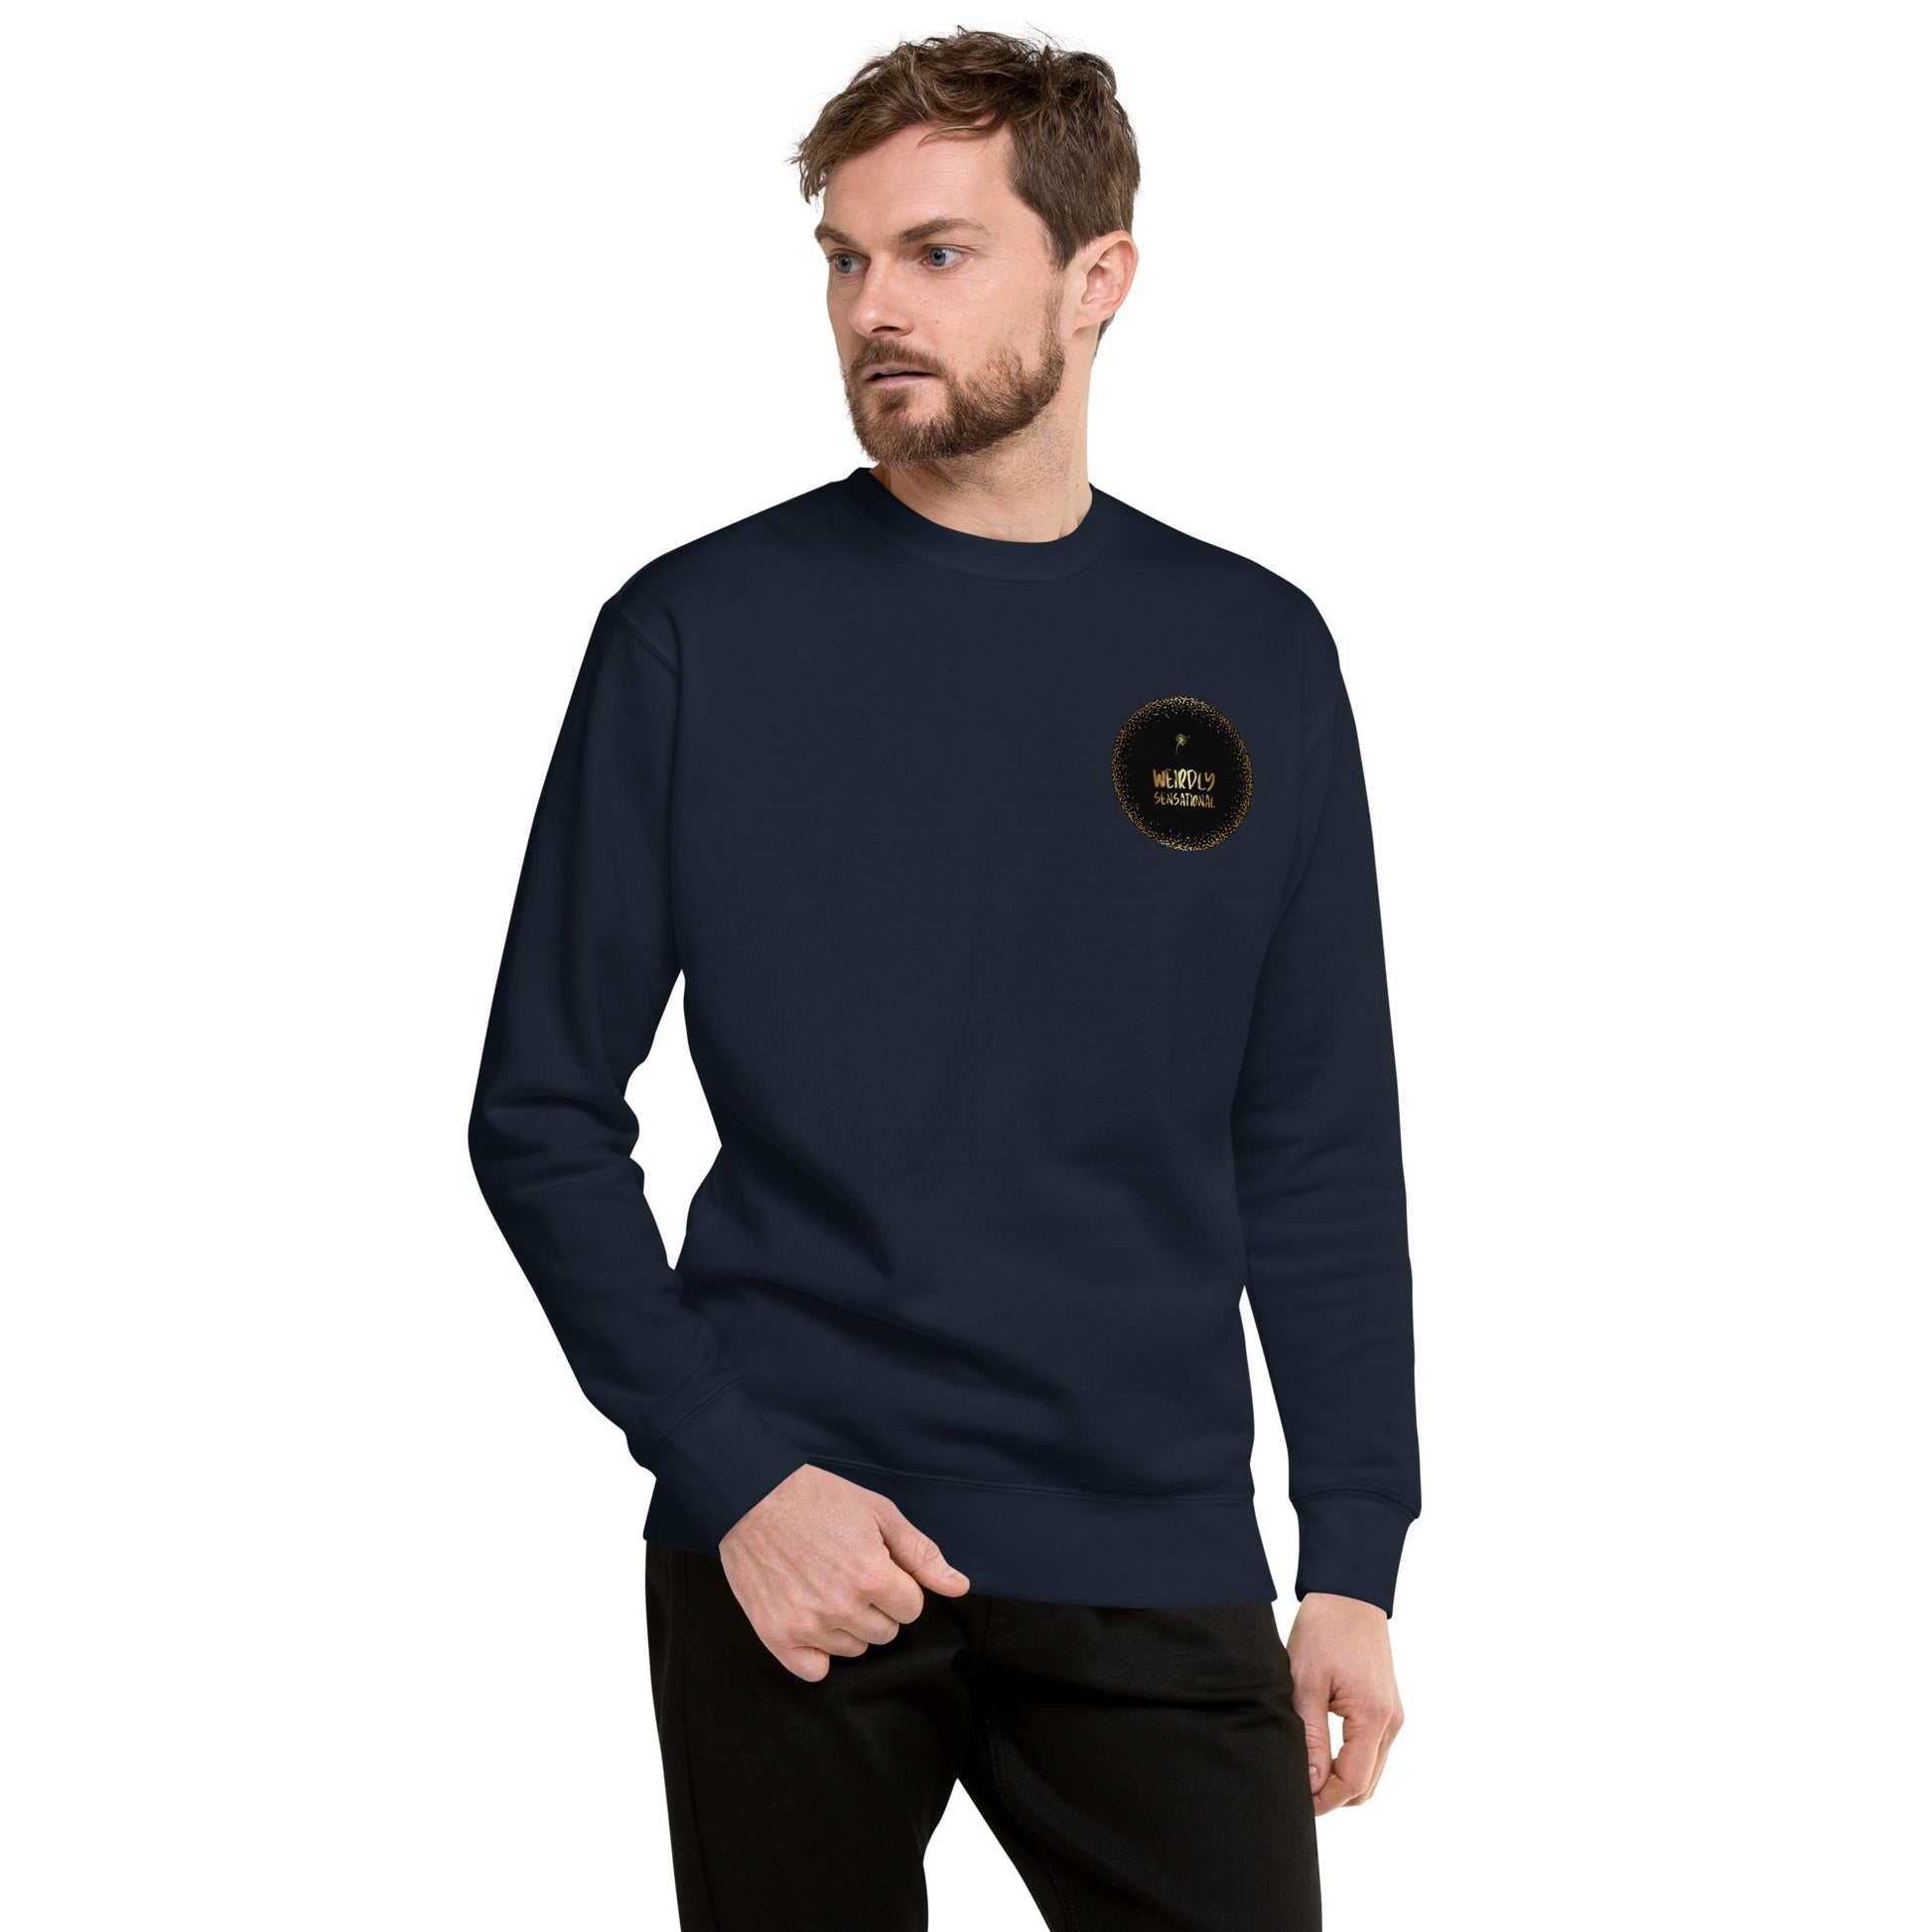 Misunderstood Unisex Premium Sweatshirt Weirdly Sensational